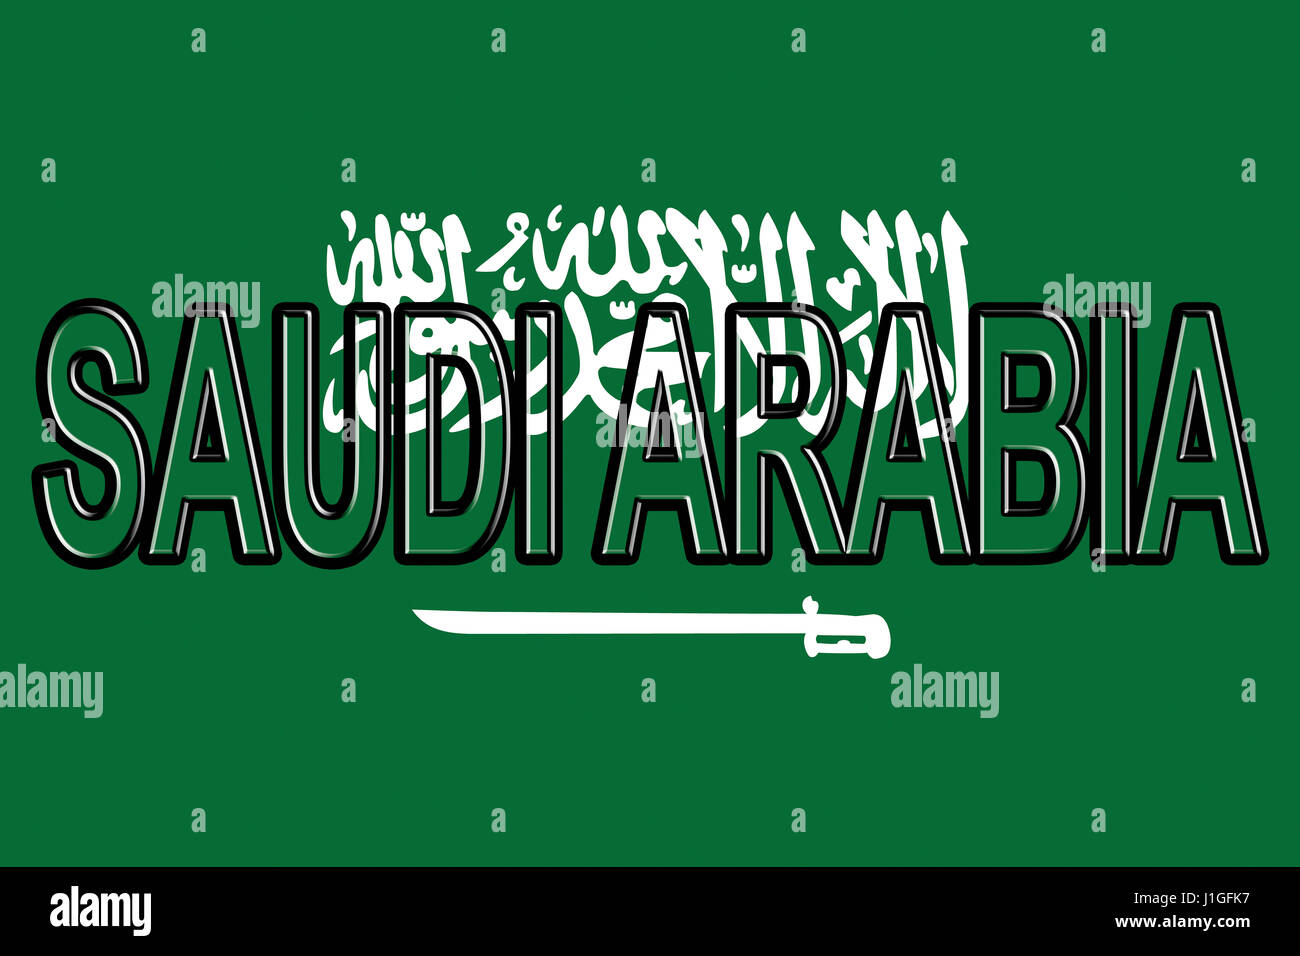 Ilustración de la bandera de Arabia Saudita con el país escrito en la bandera. Foto de stock